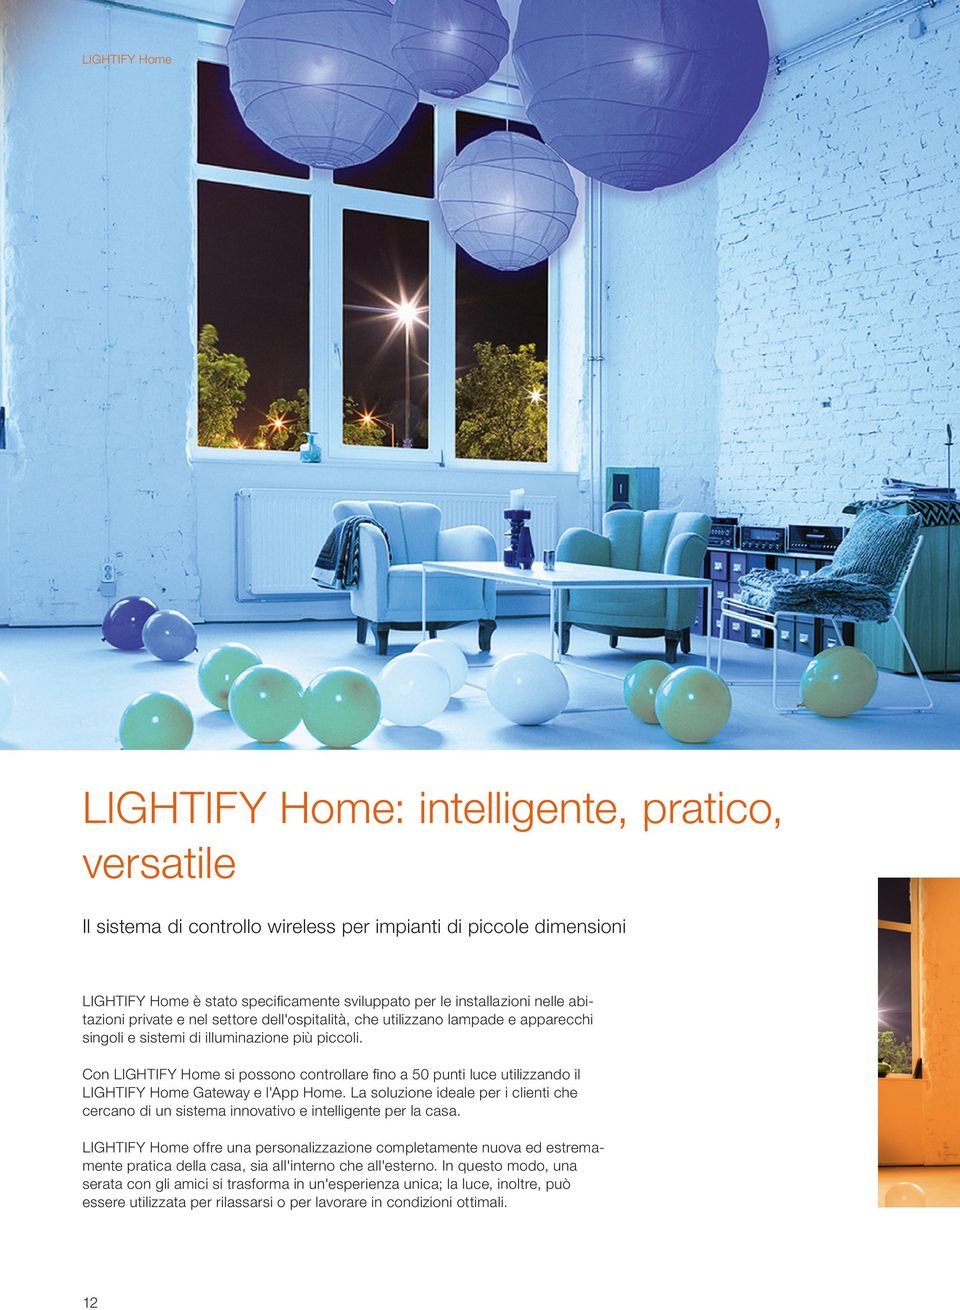 Con LIGHTIFY Home si possono controllare ﬁno a 50 punti luce utilizzando il LIGHTIFY Home Gateway e l'app Home.